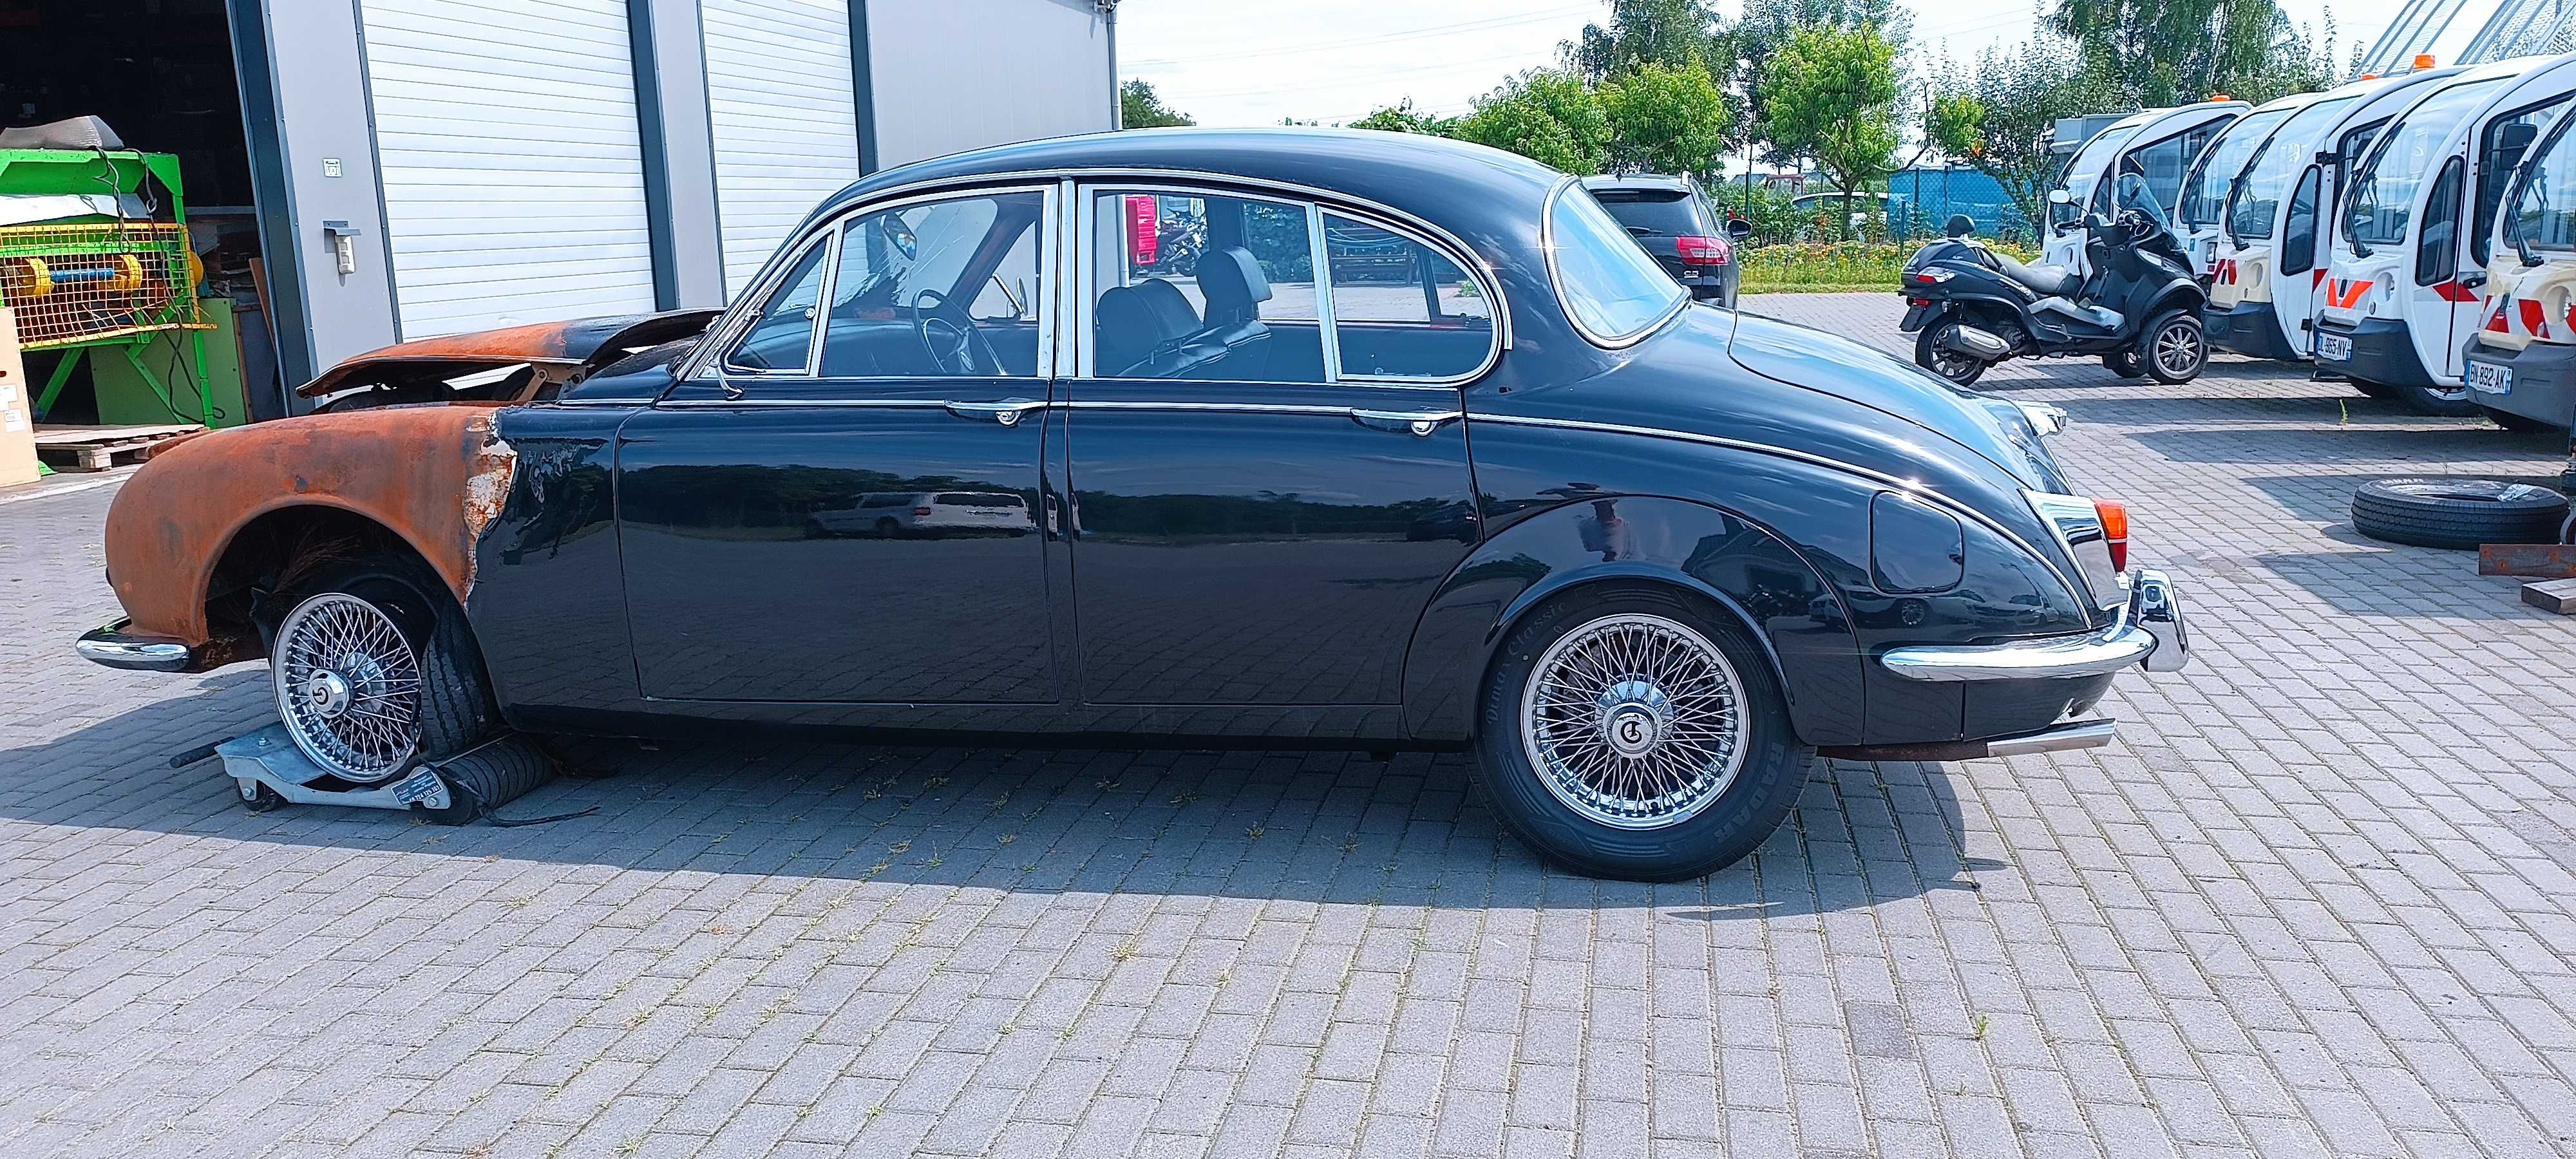 Daimler MKII 250 v8 Jaguar